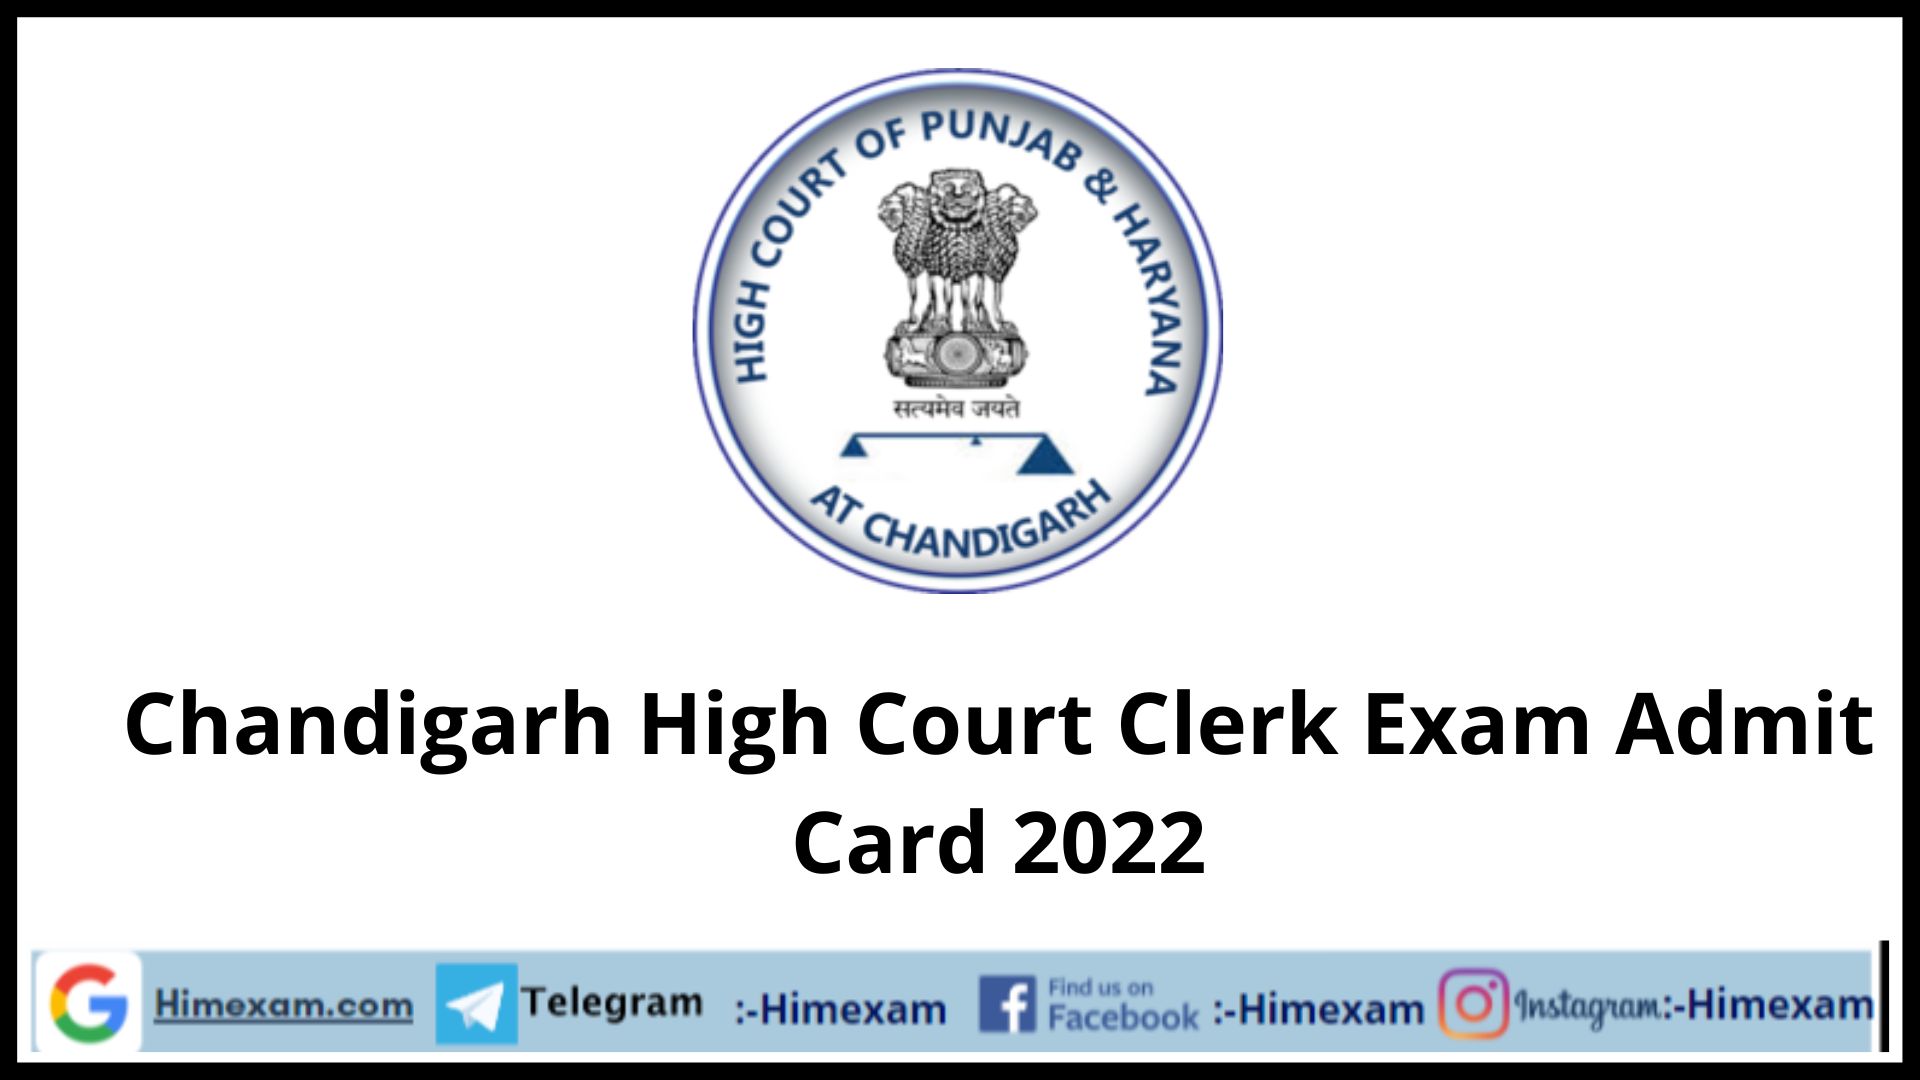 Chandigarh High Court Clerk Exam Admit Card 2022